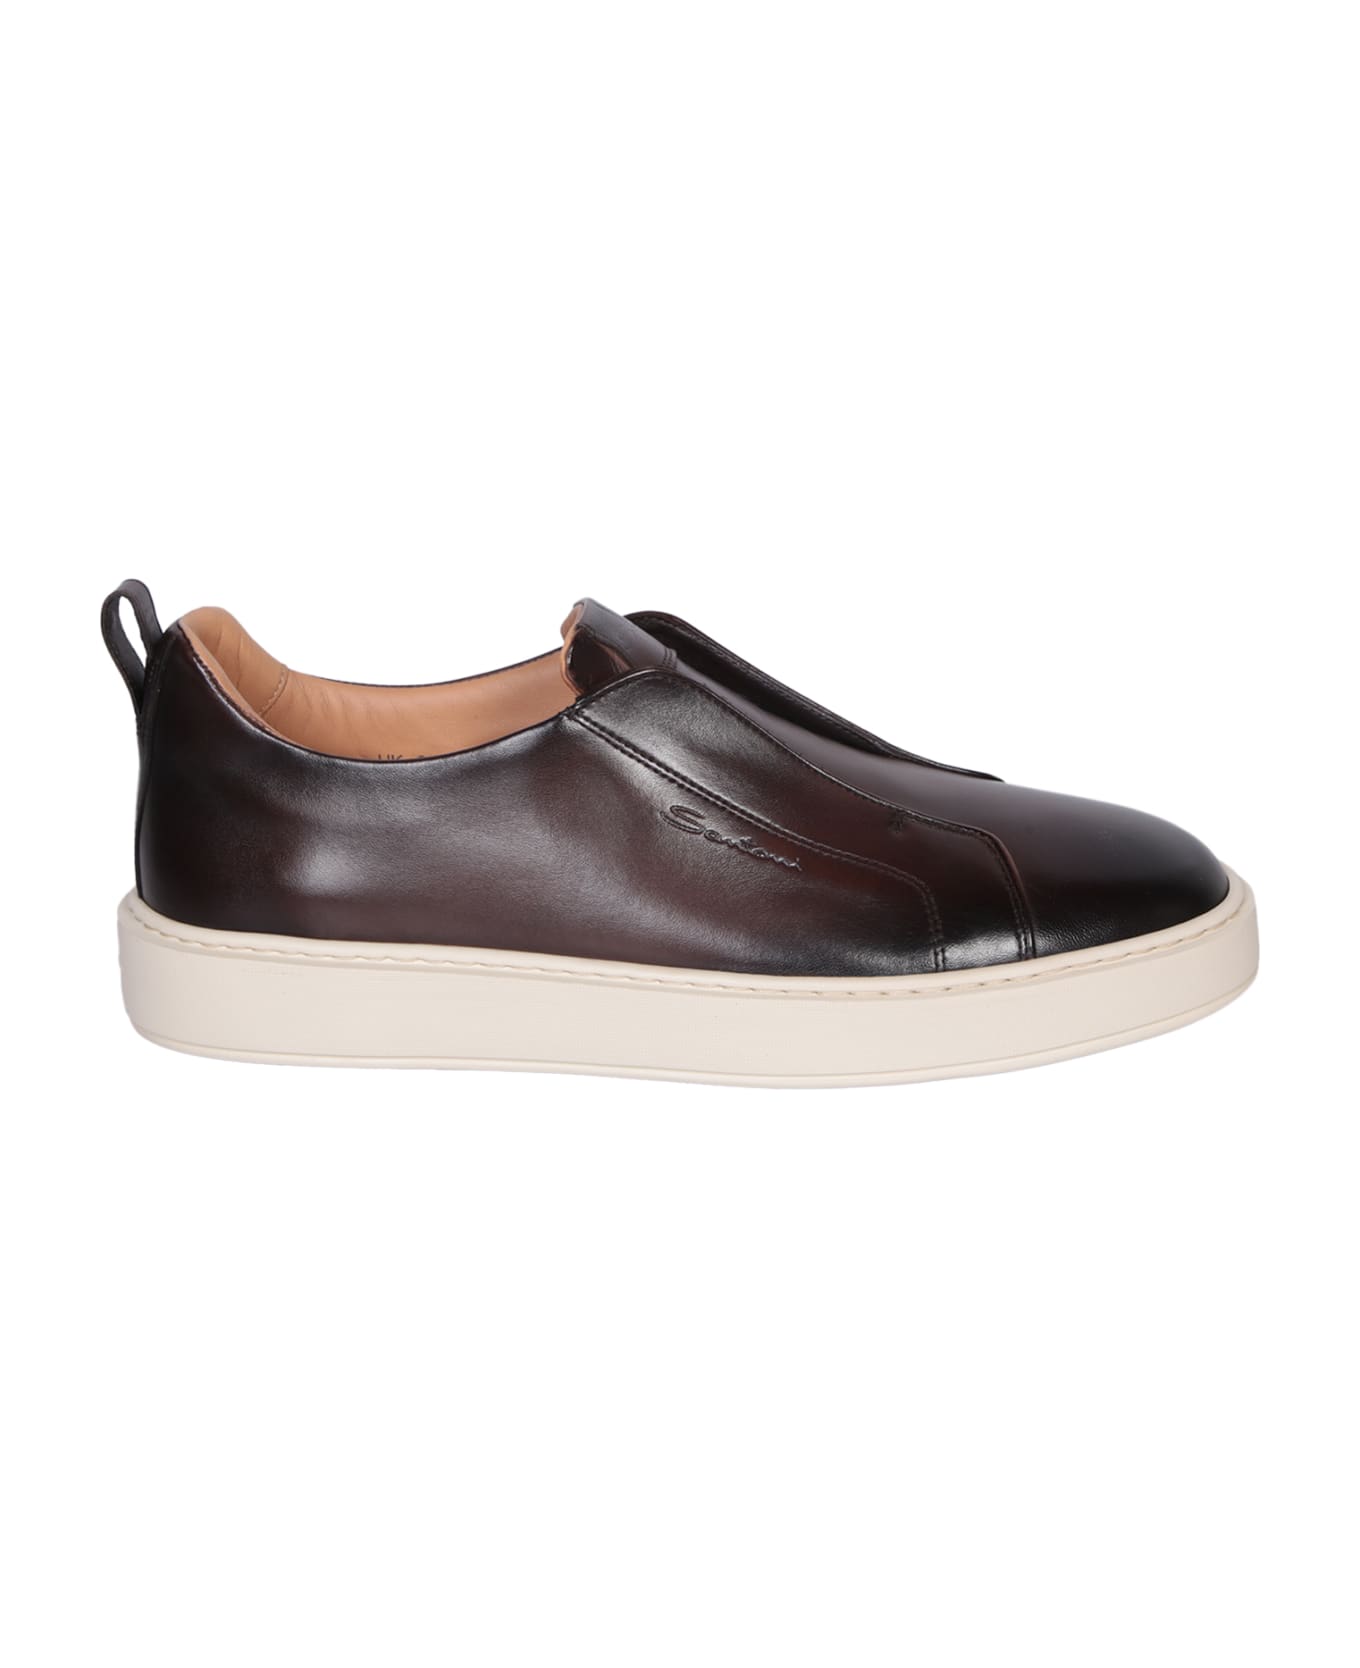 Santoni Victor Leather Slip-on Brown Sneakers - Brown